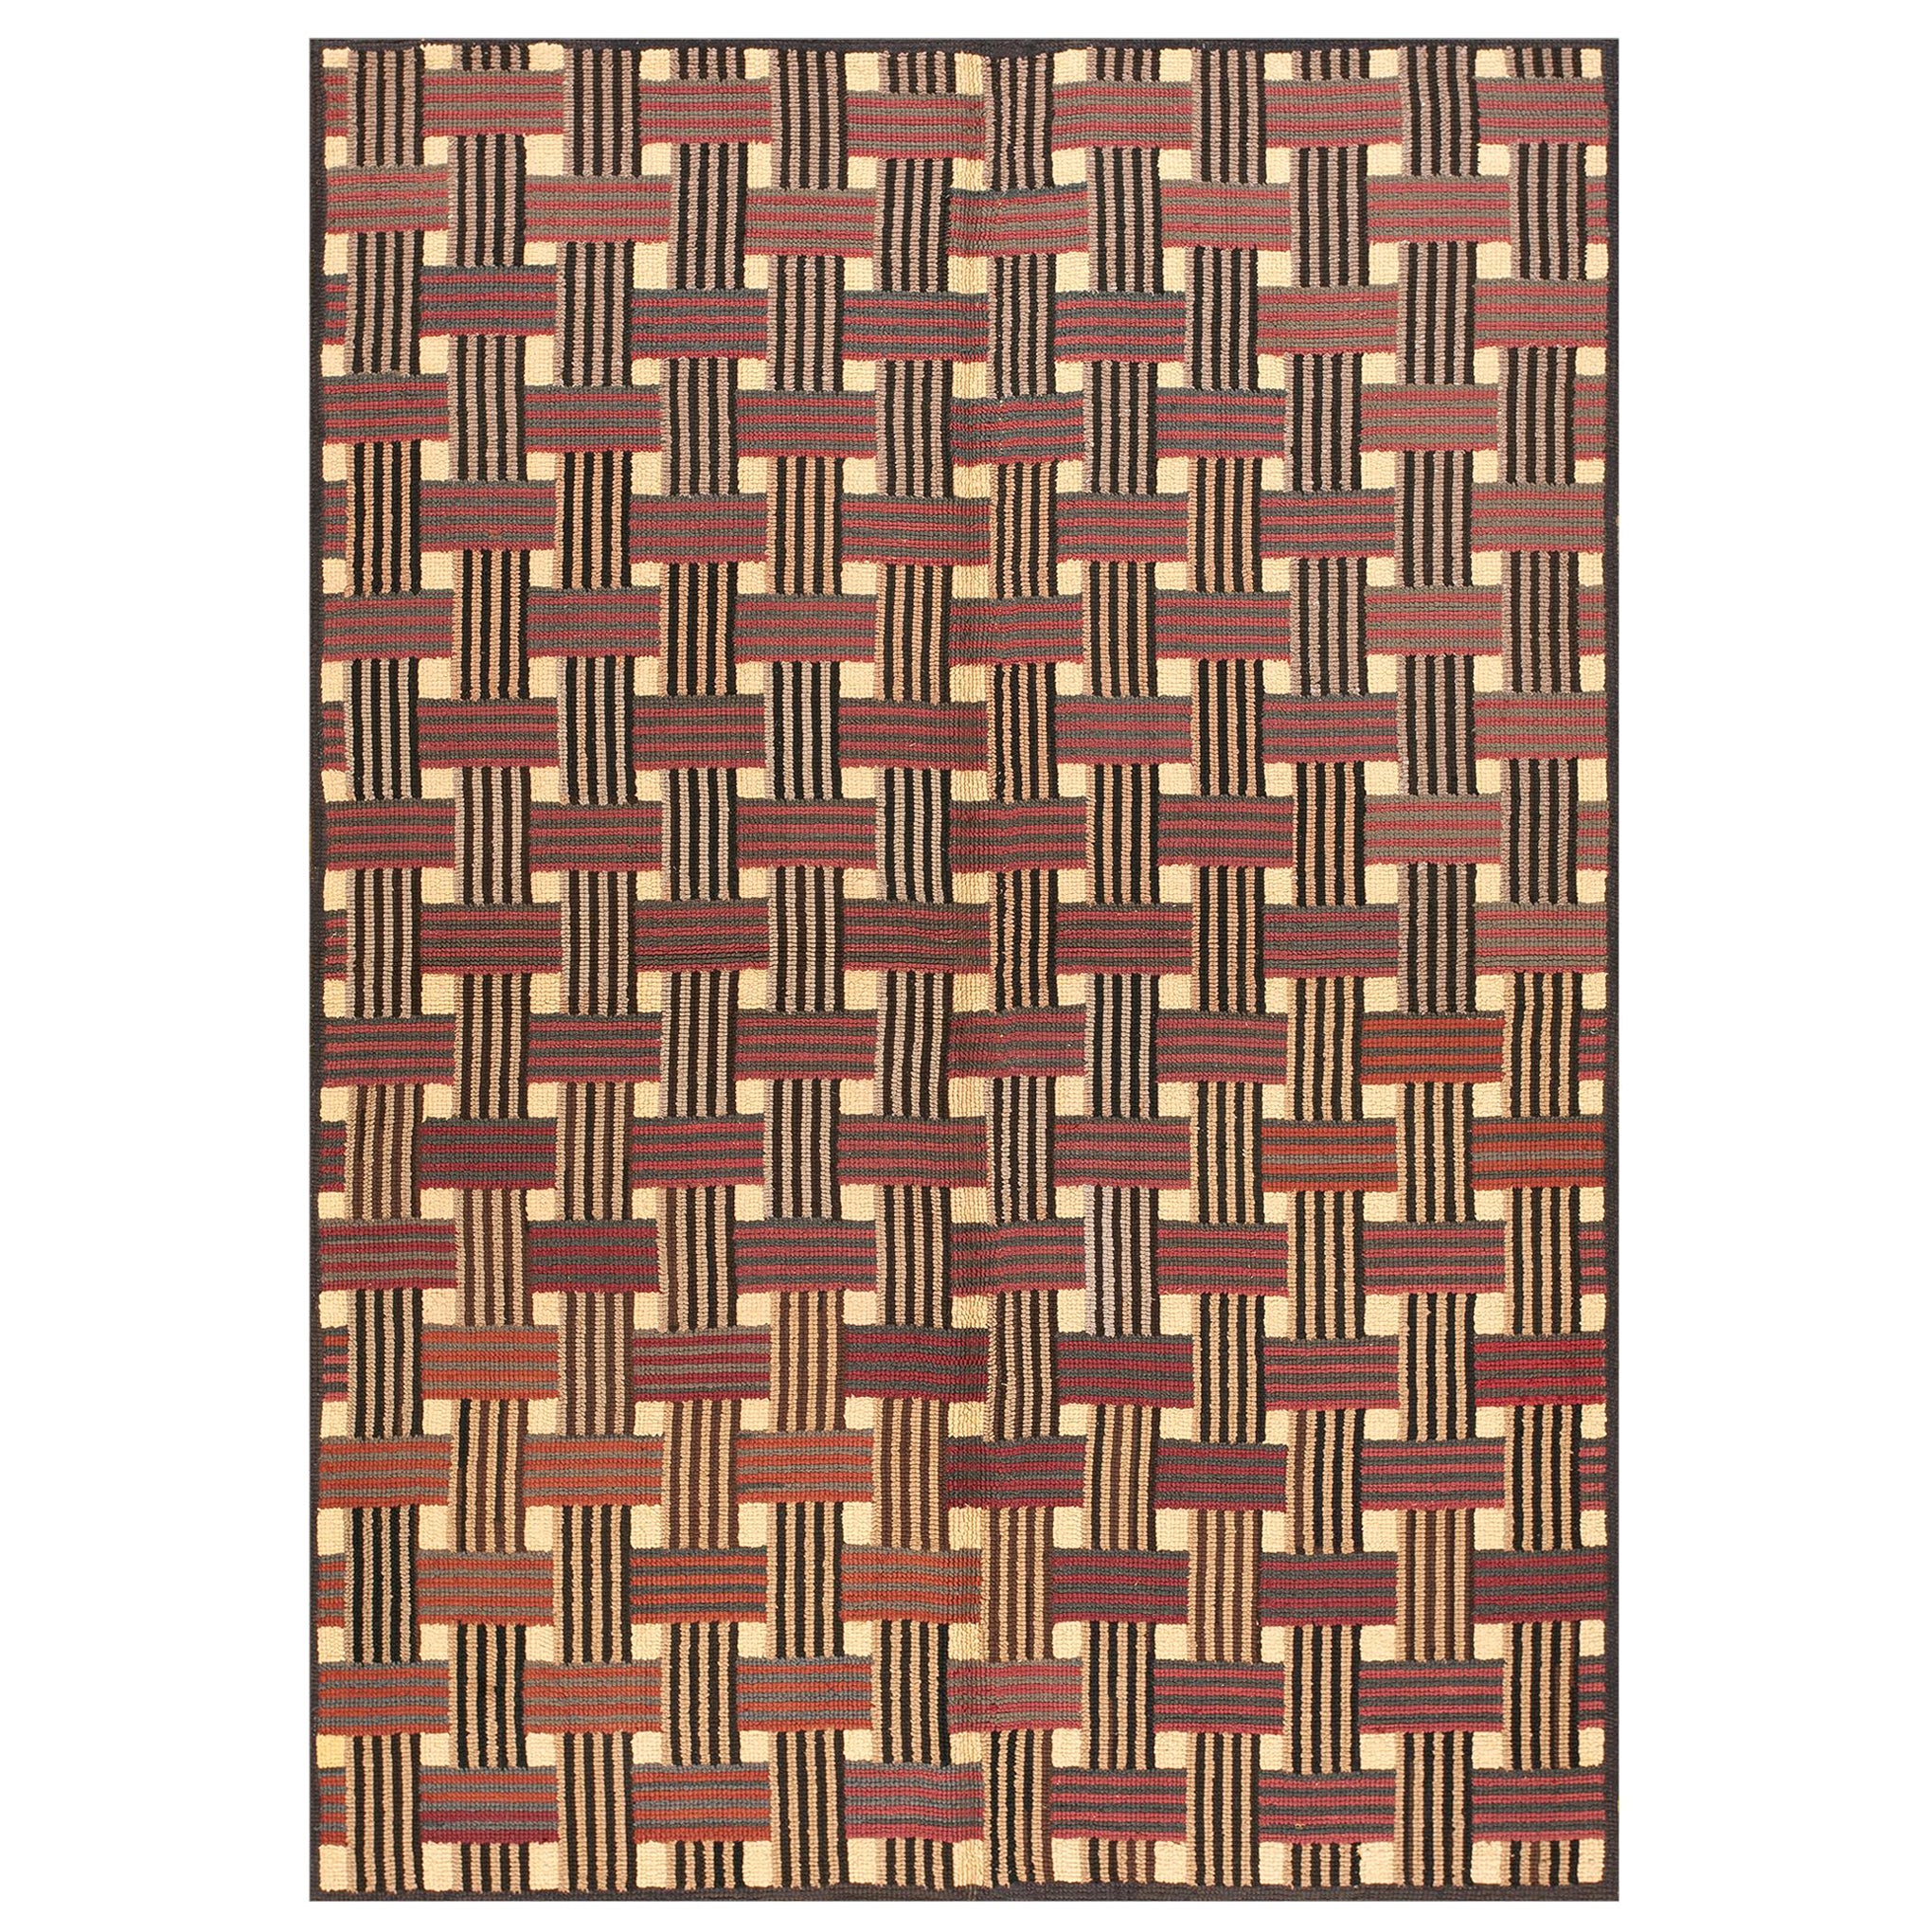 Amerikanischer Hakenteppich aus der Mitte des 20. Jahrhunderts ( 1,82 m x 1,88 m – 188 x 265 cm)